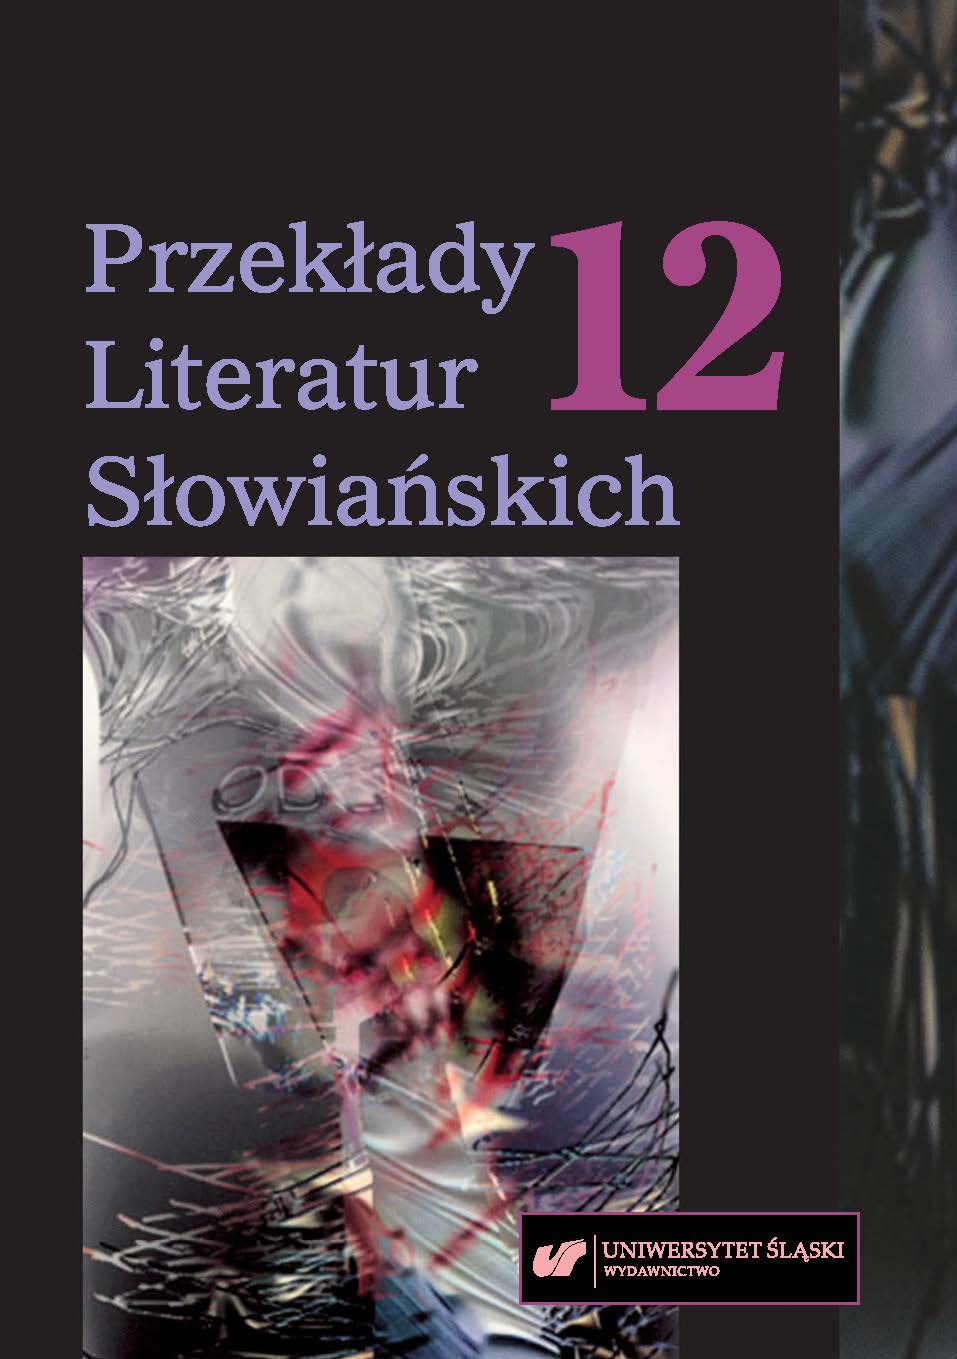 Tri dekady poľskej literatury na Slovensku v prekladoch Karola Chmela